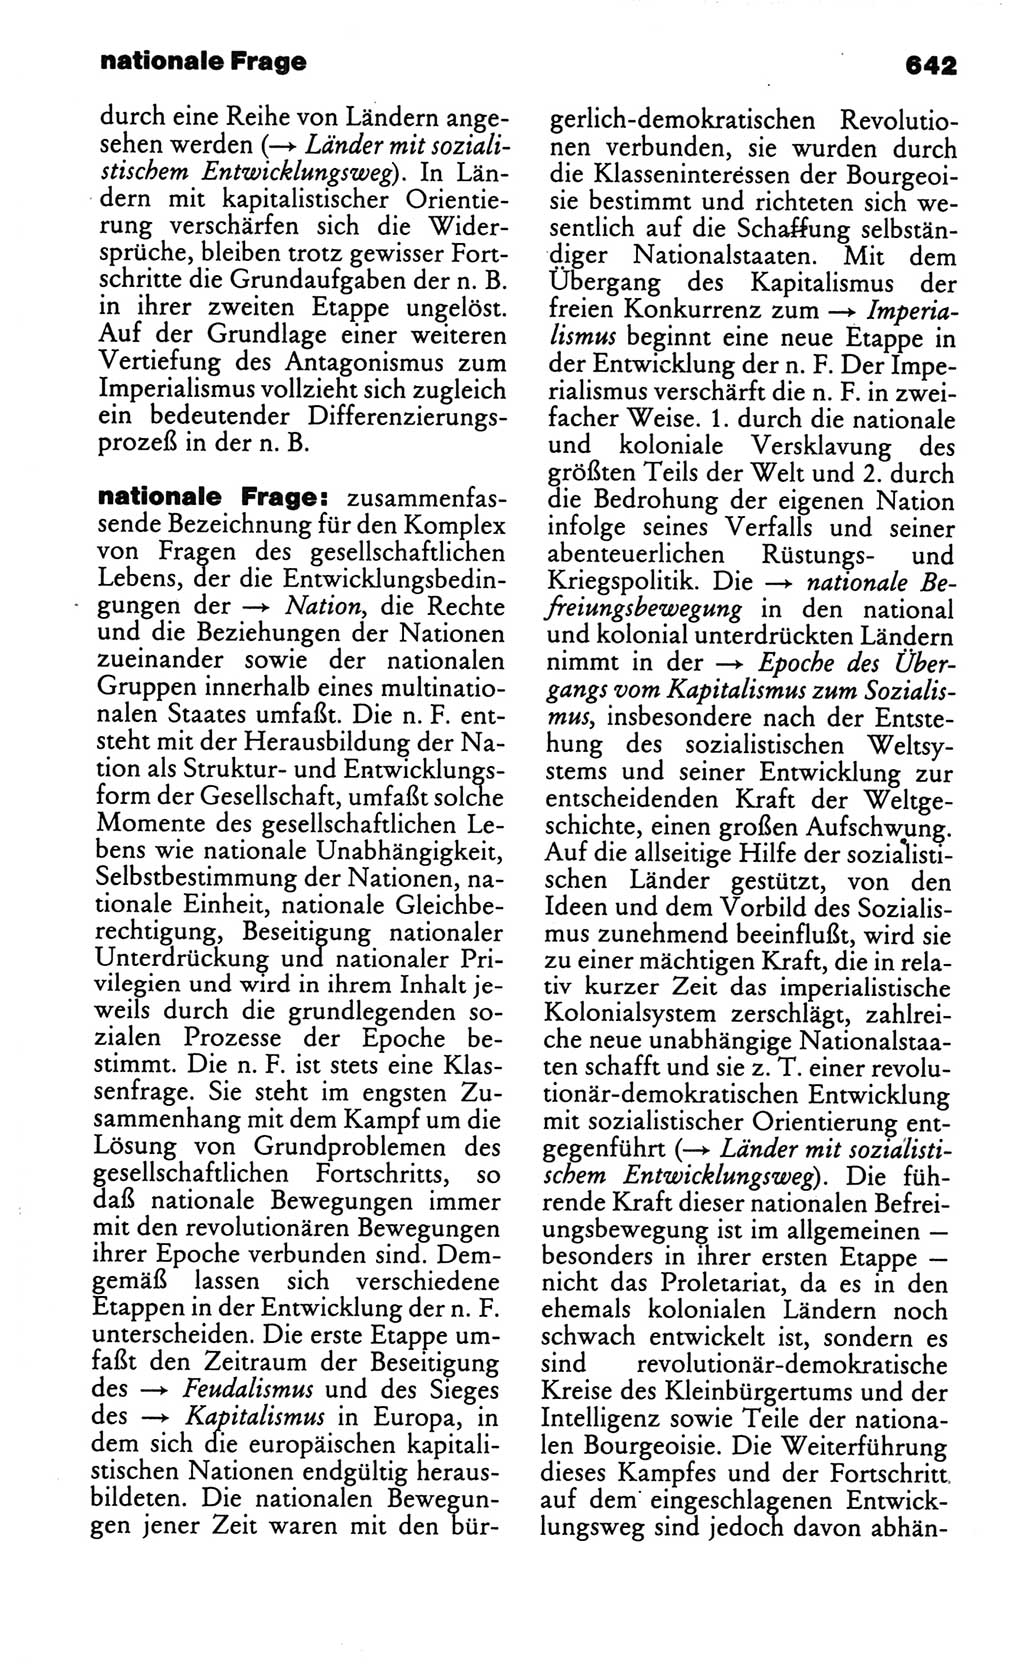 Kleines politisches Wörterbuch [Deutsche Demokratische Republik (DDR)] 1986, Seite 642 (Kl. pol. Wb. DDR 1986, S. 642)